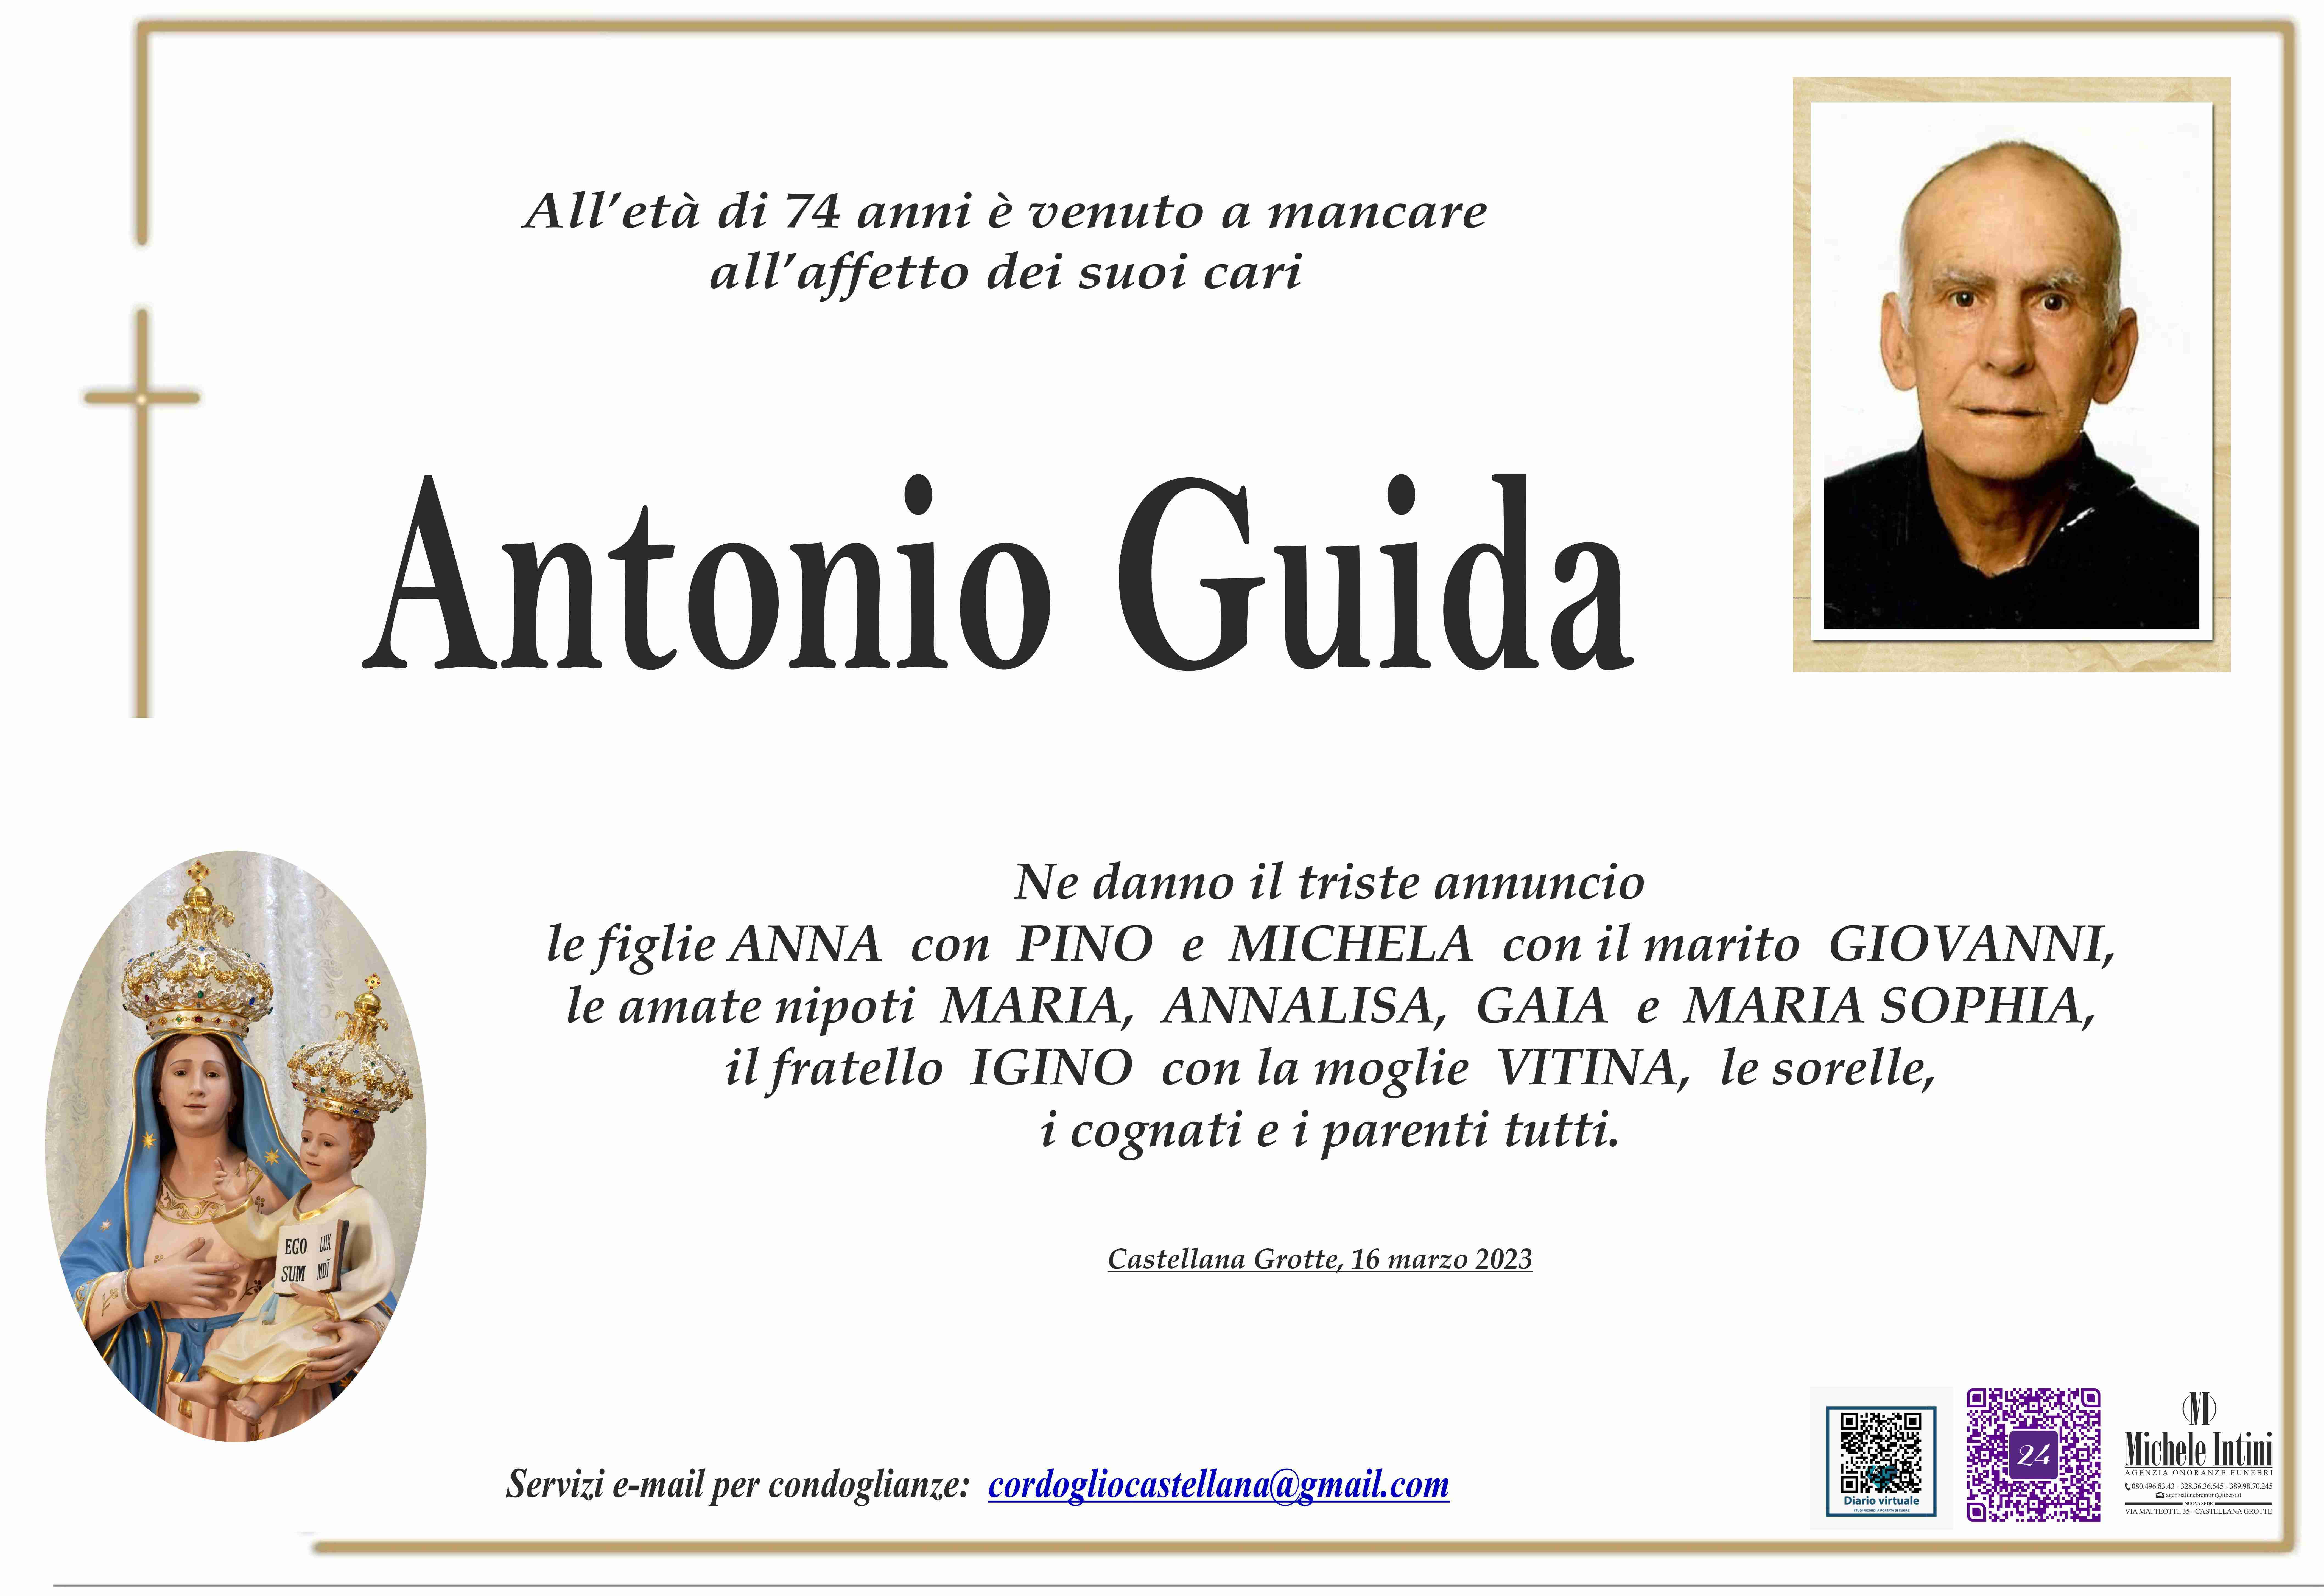 Antonio Guida